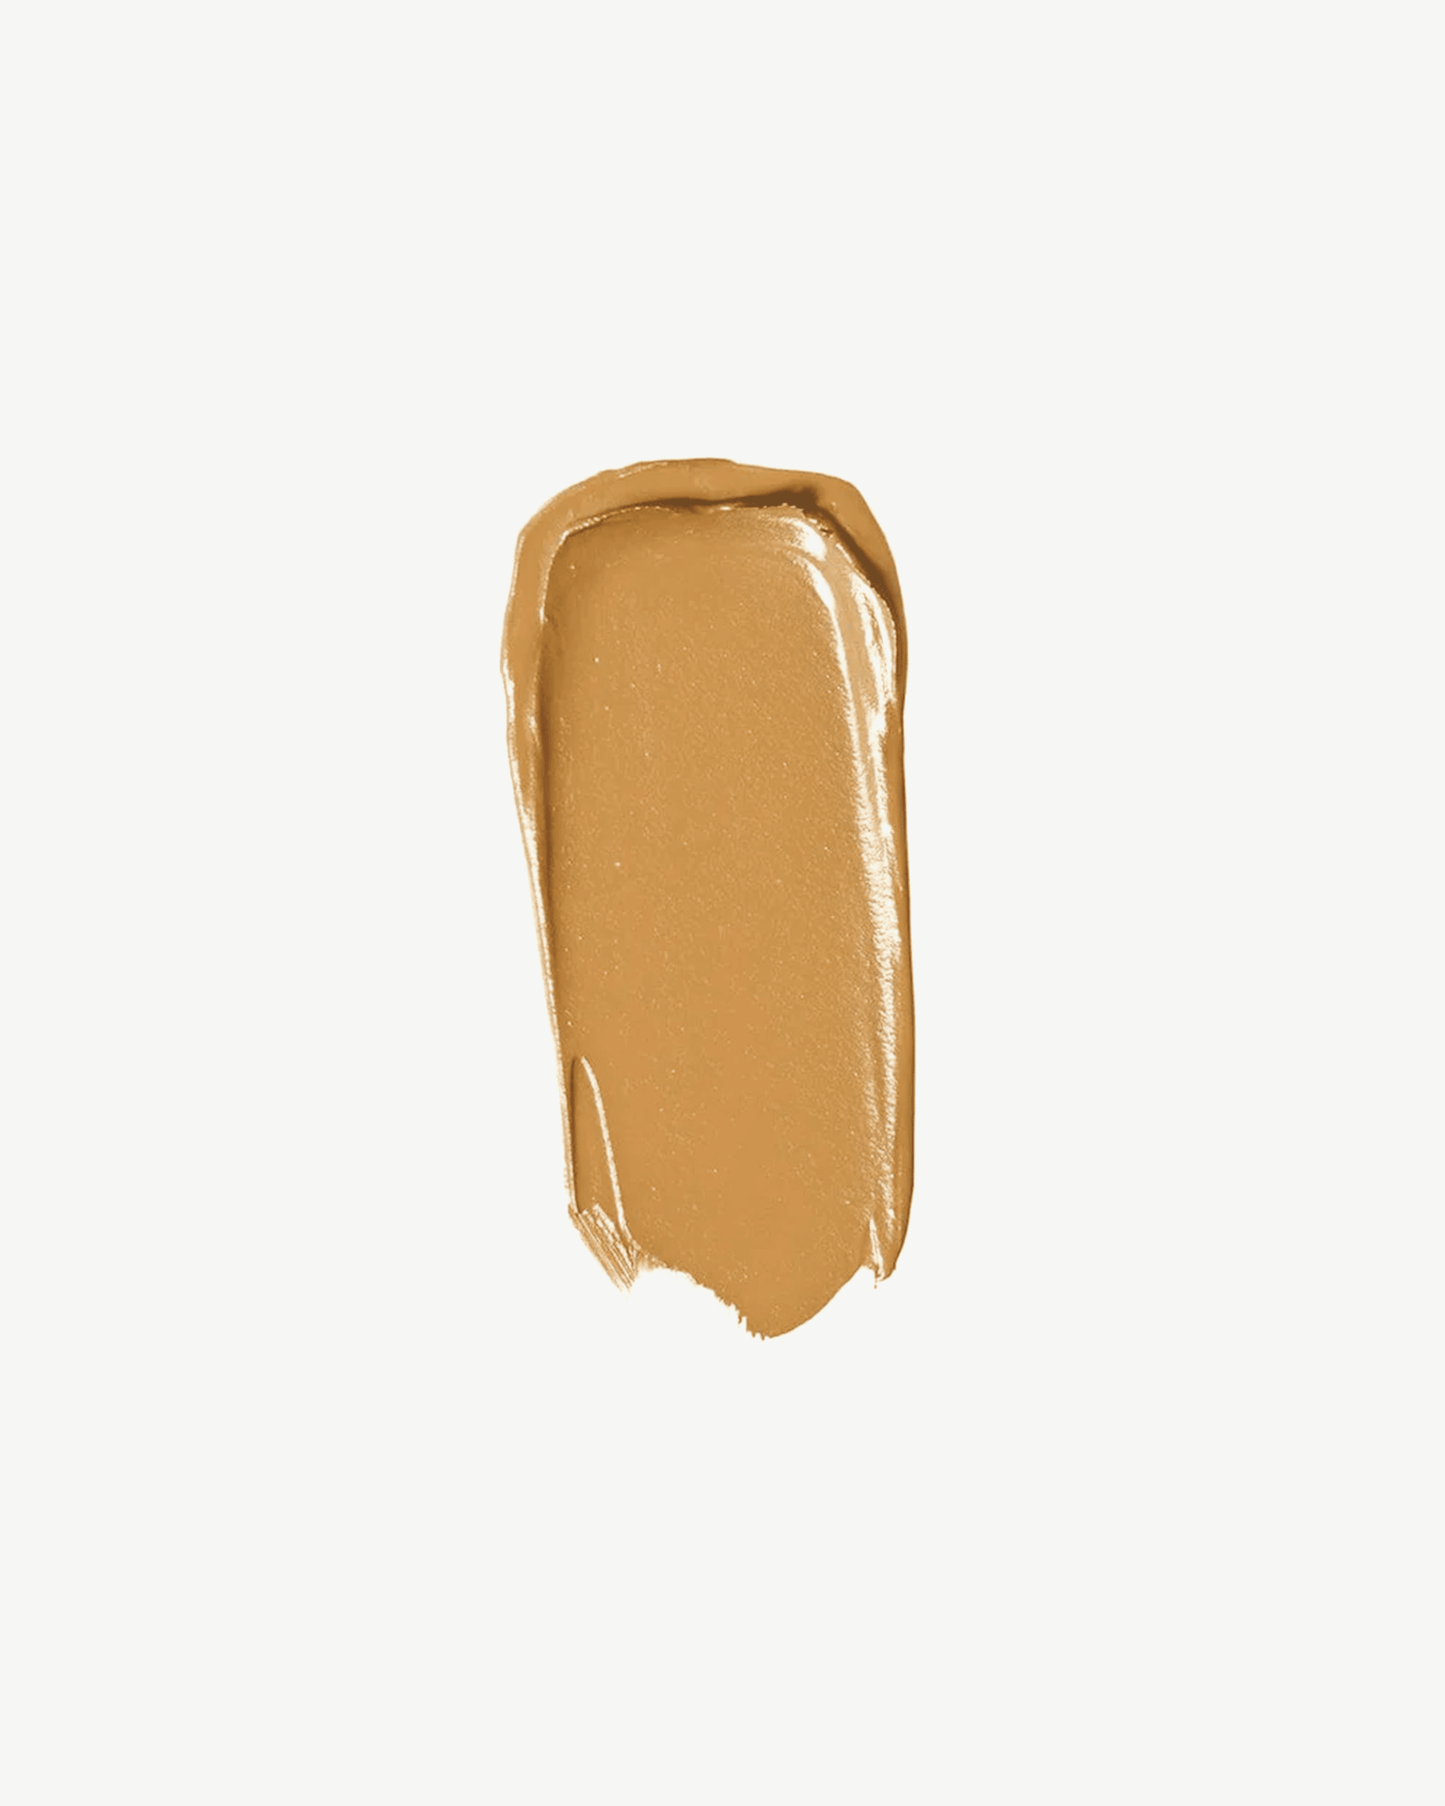 Gold 80 (medium brown with golden undertones)